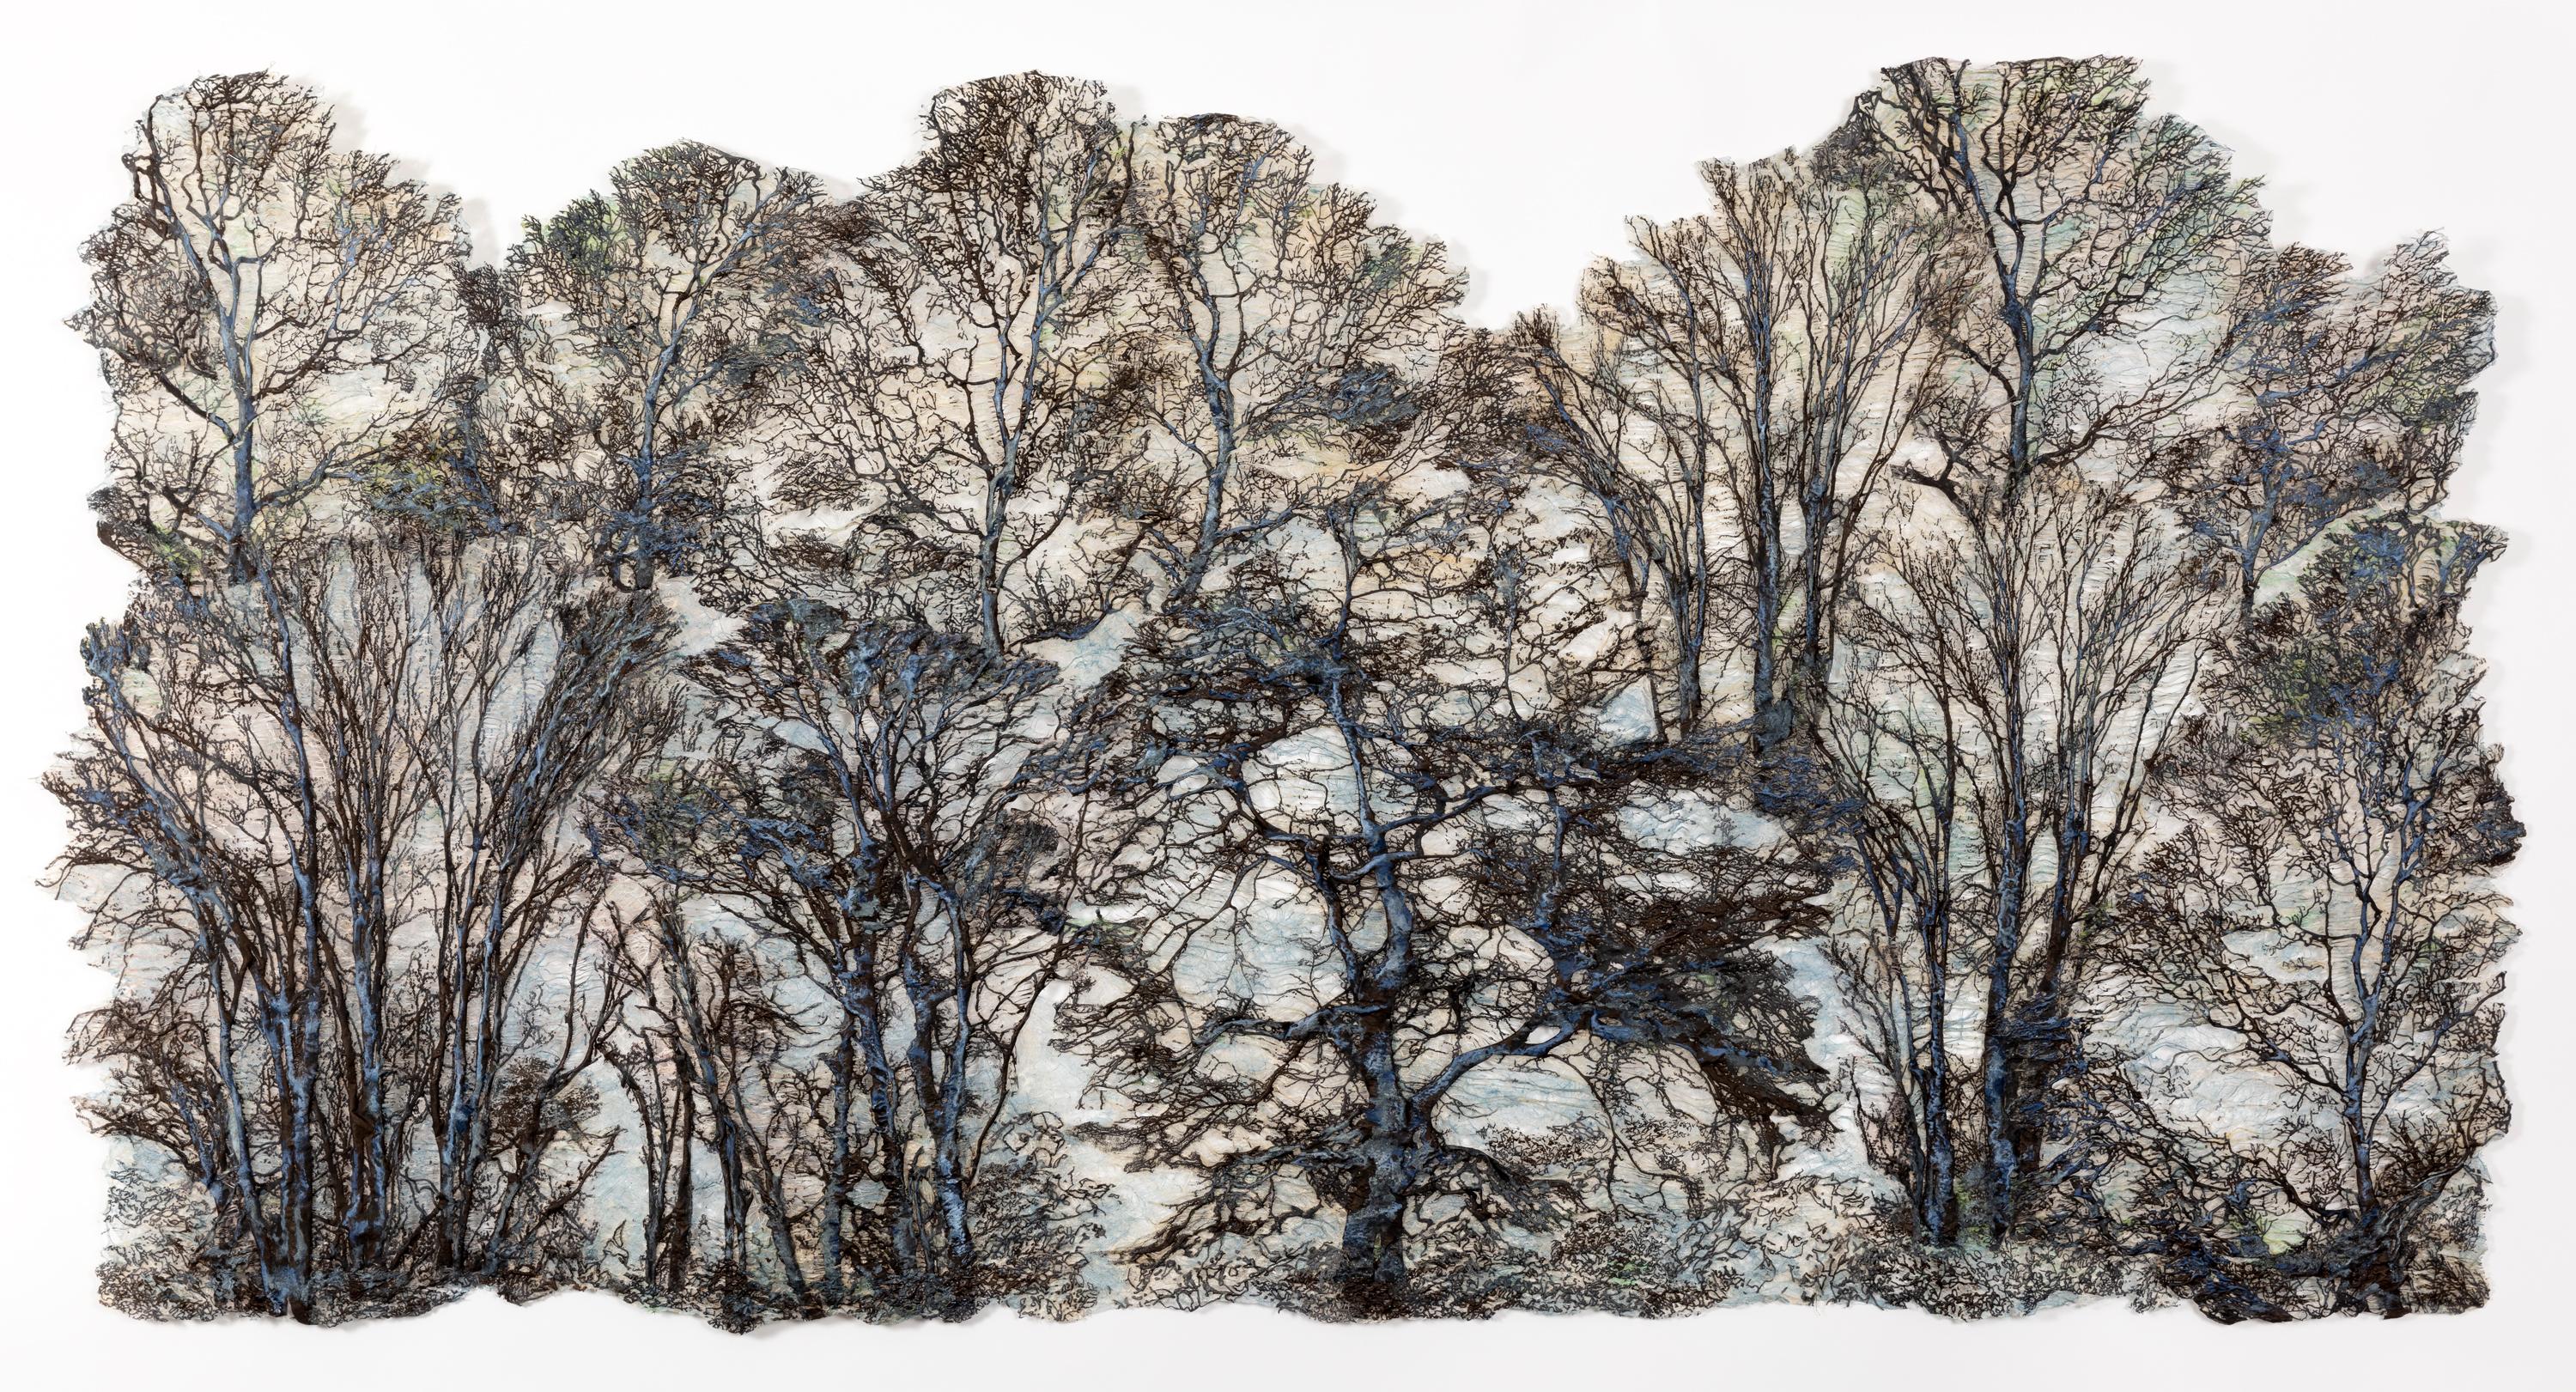 „Blue Mist Forest“, Zeitgenössisch, Mixed Media, Wandbehang, Baumkrone, Faser – Sculpture von Lesley Richmond